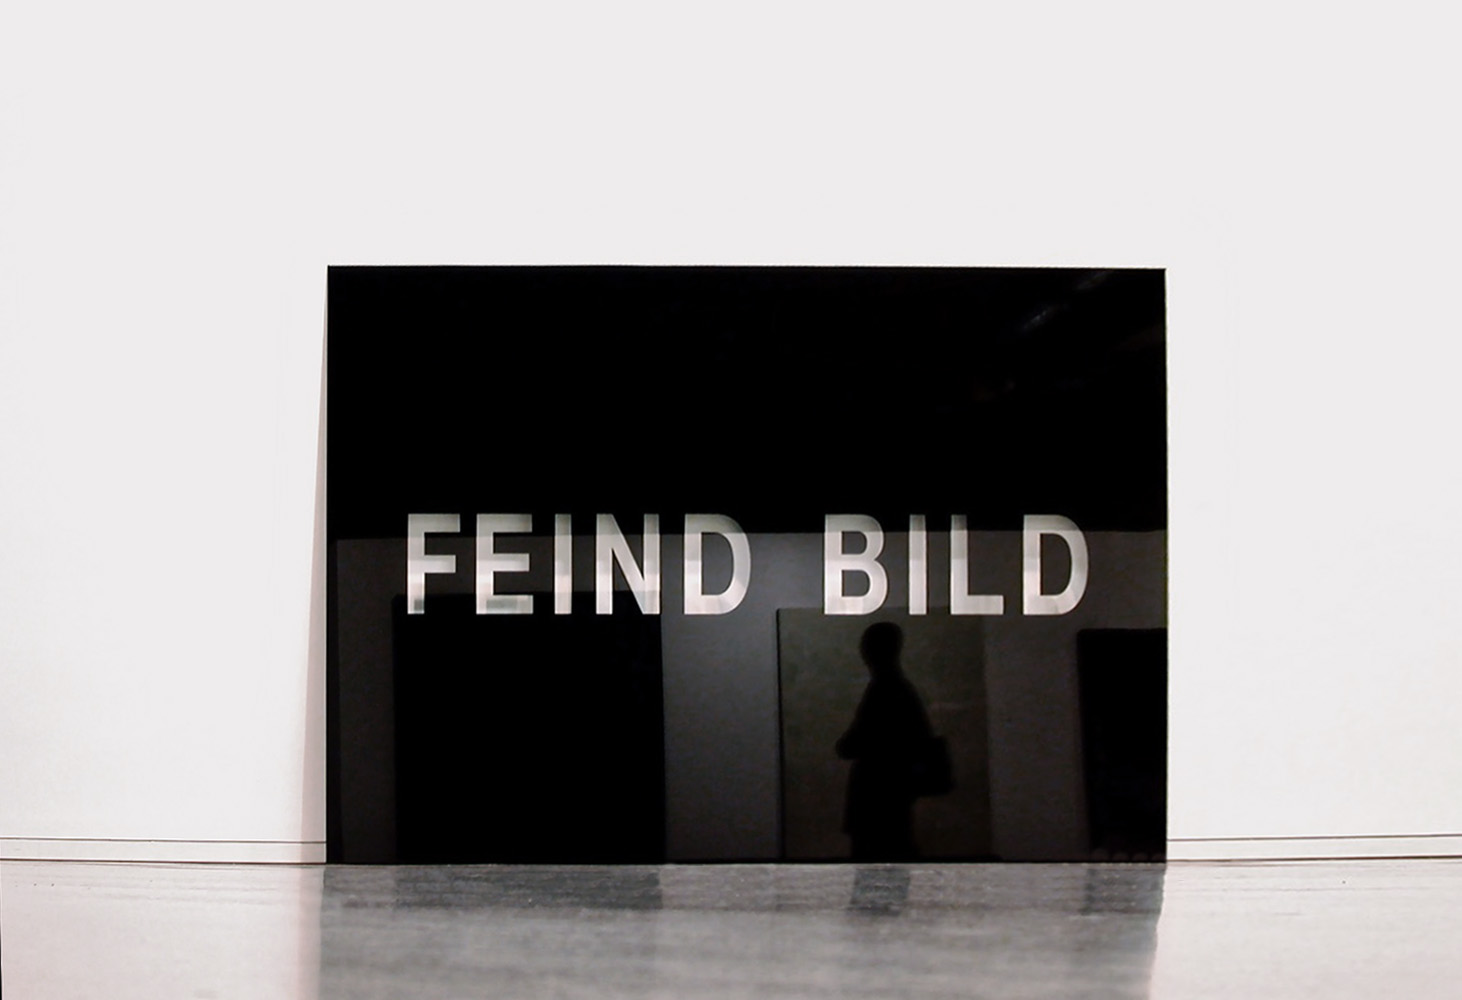 Feind Bild<br>2000, Glas, glass, 180x240cm|
Ausstellung: Diskursive Malerei, MUMOK Wien 2000/2001; Exhibition: Discourses in Painting  / MUMOK Vienna 2000/2001
